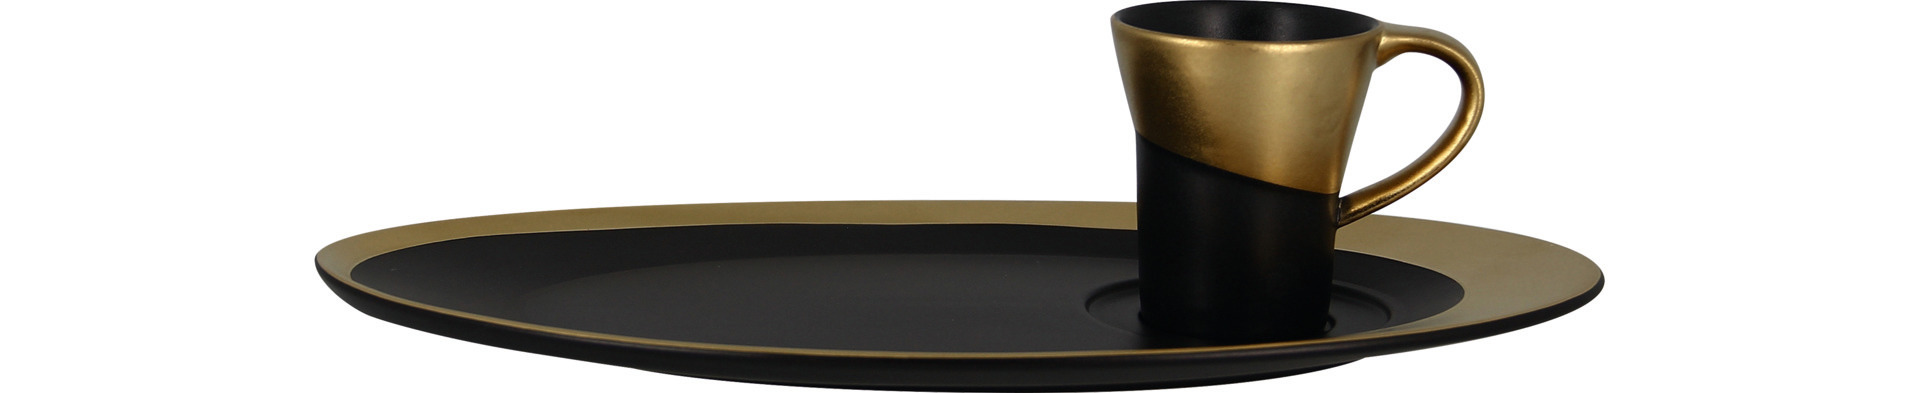 Espressotasse 60 mm / 0,09 l schwarz / gold